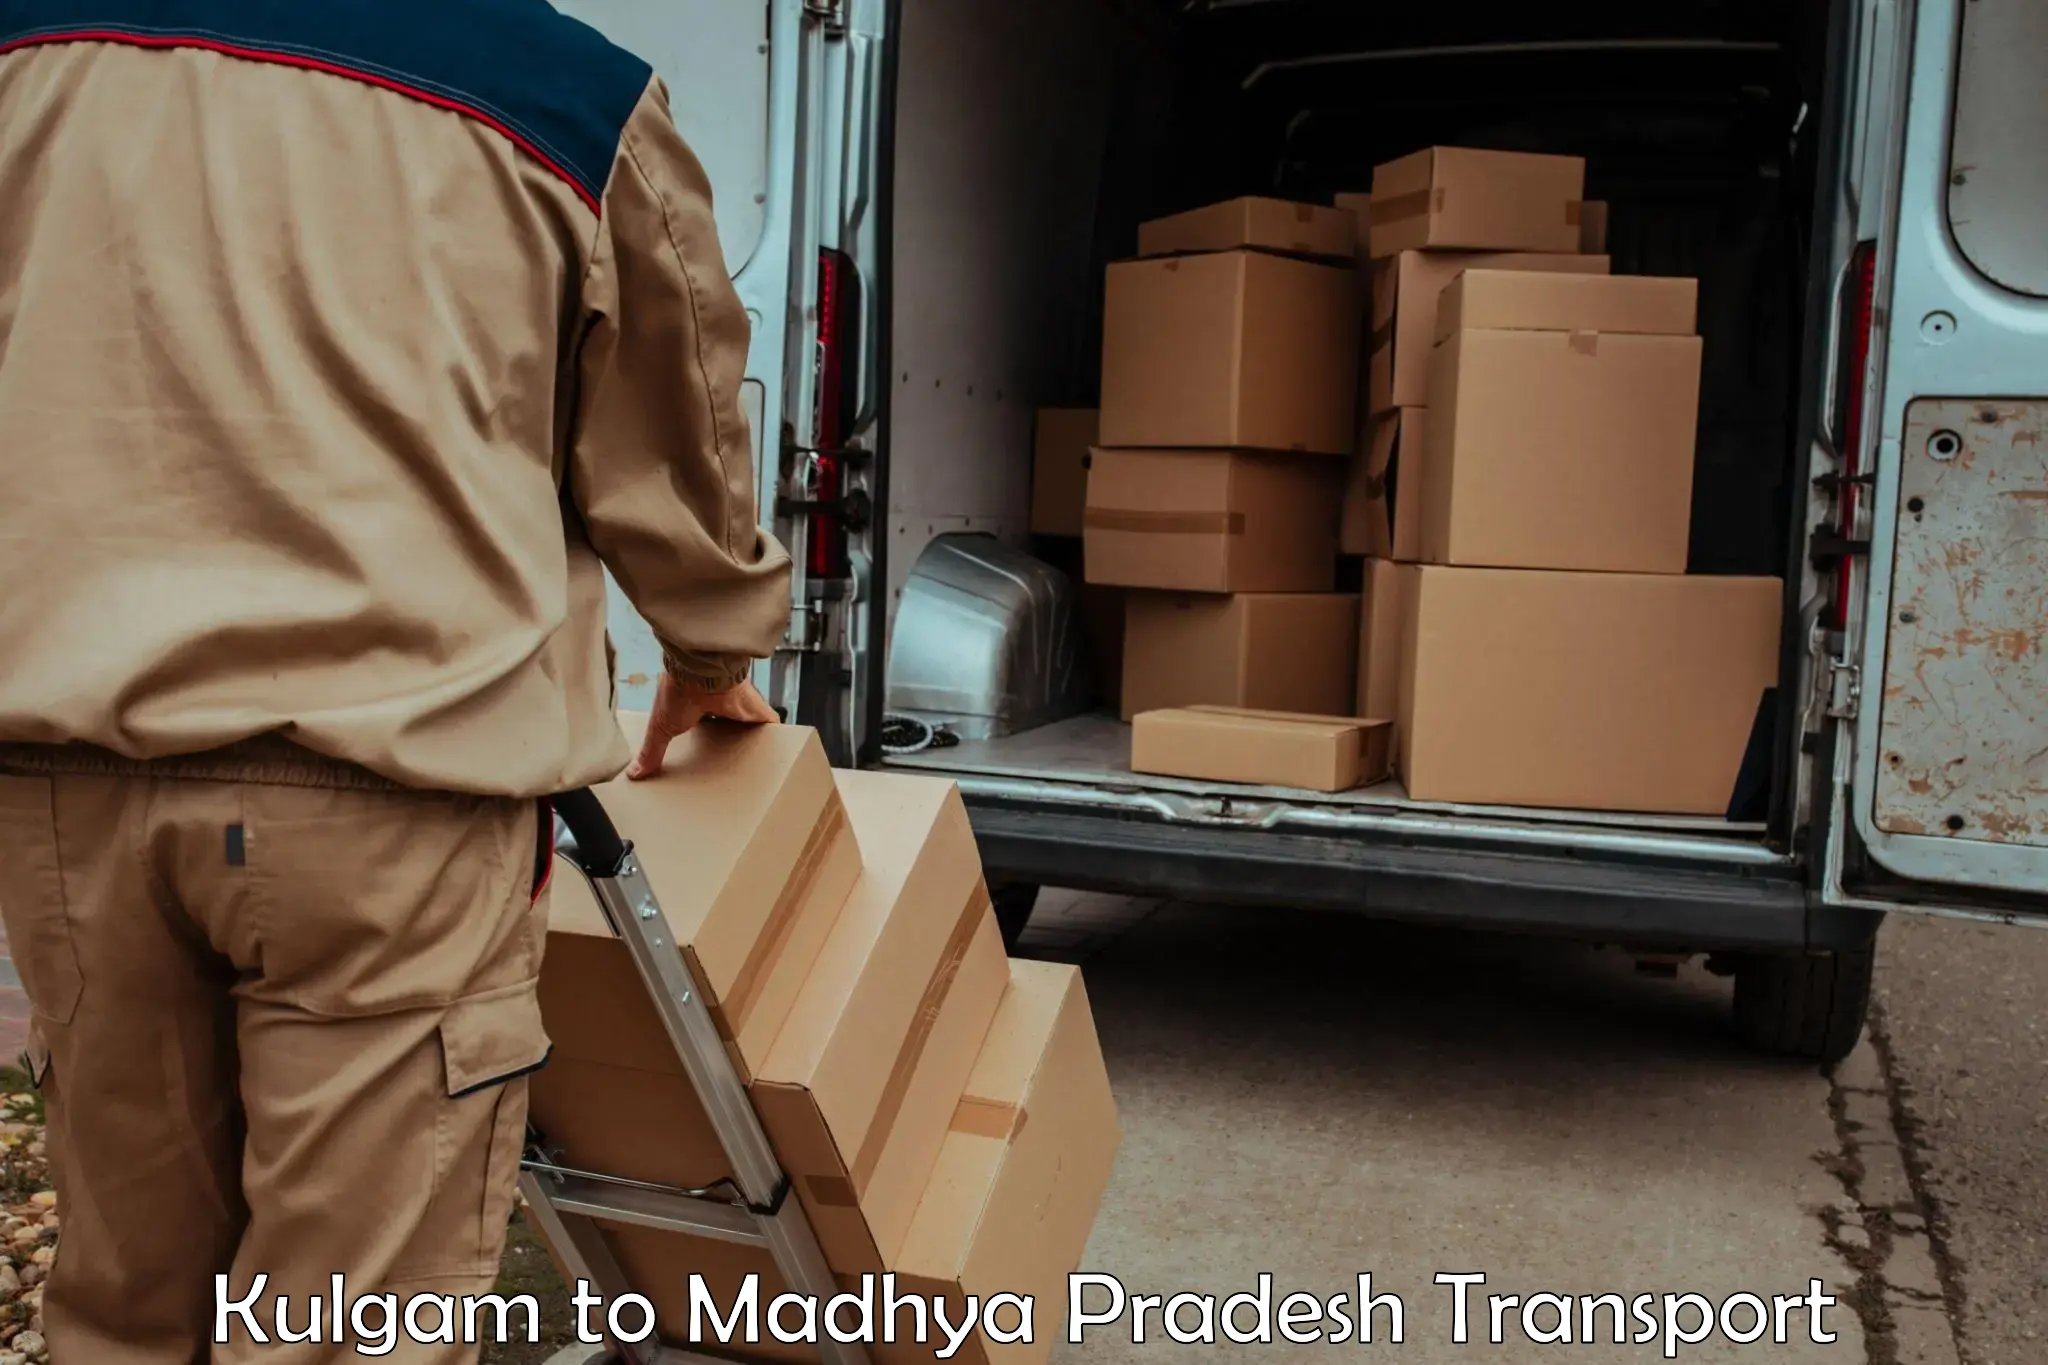 Lorry transport service Kulgam to Chhindwara